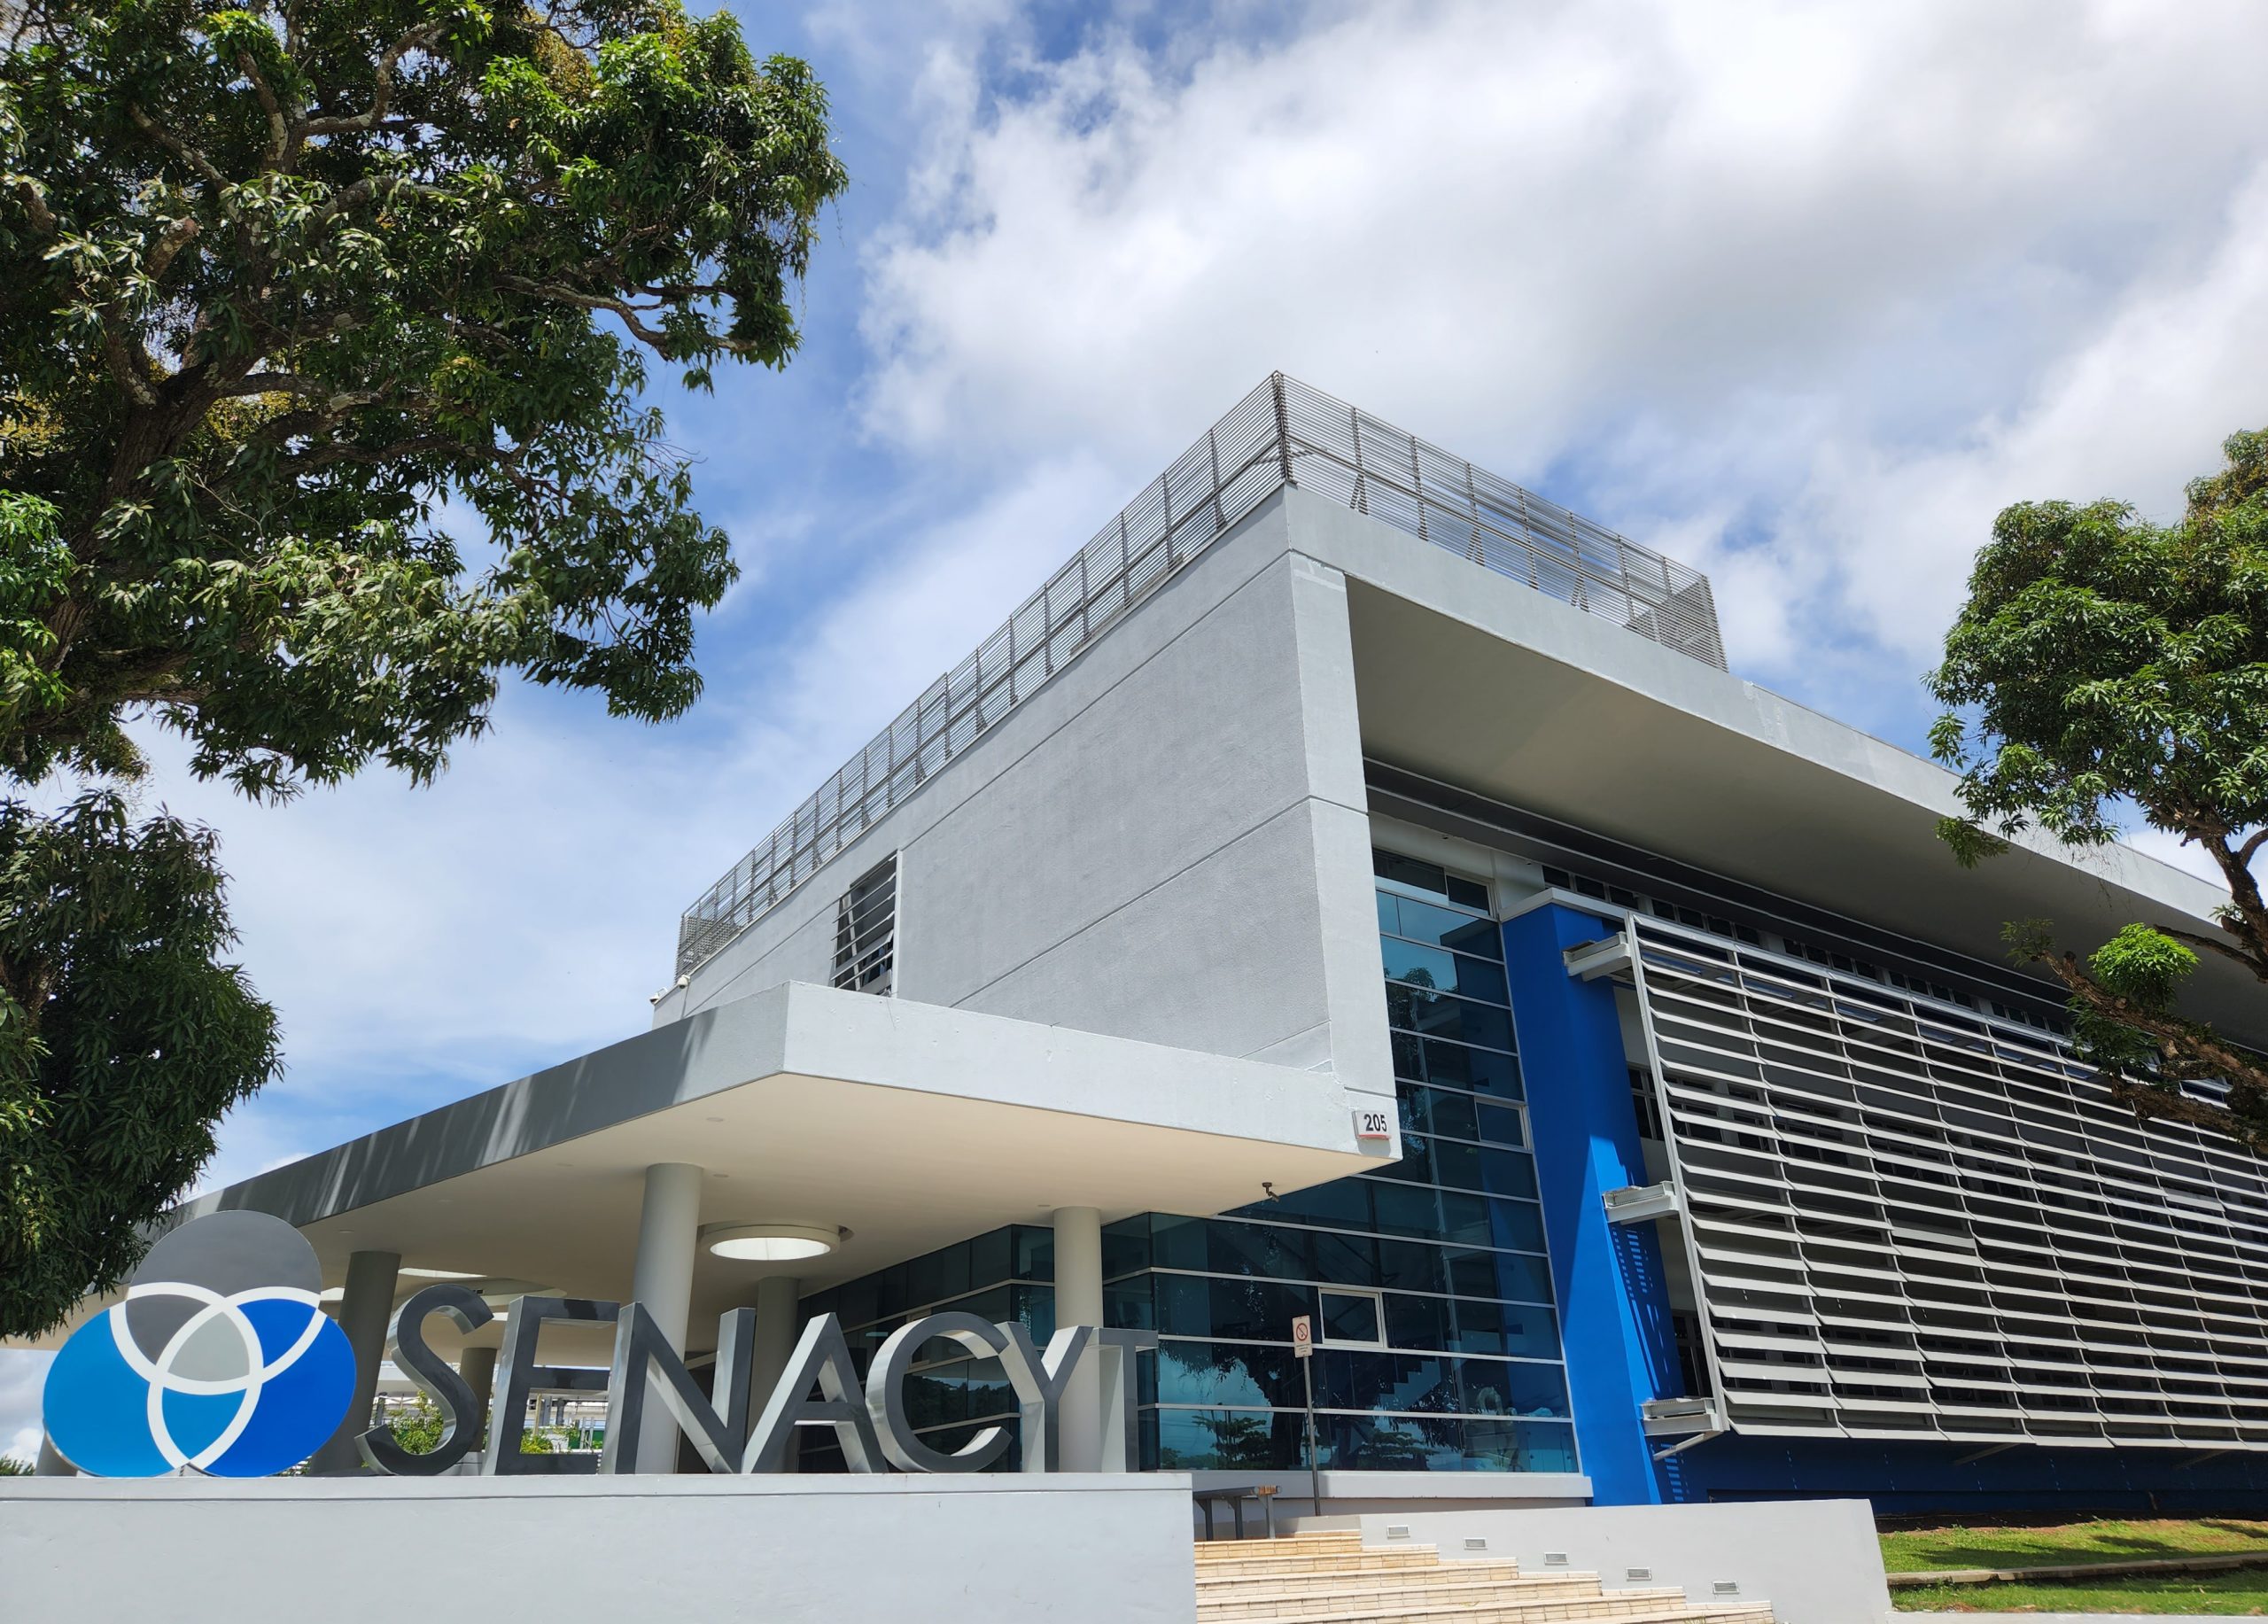 La Senacyt cumple hoy 30 años impulsando la ciencia, la tecnología y la